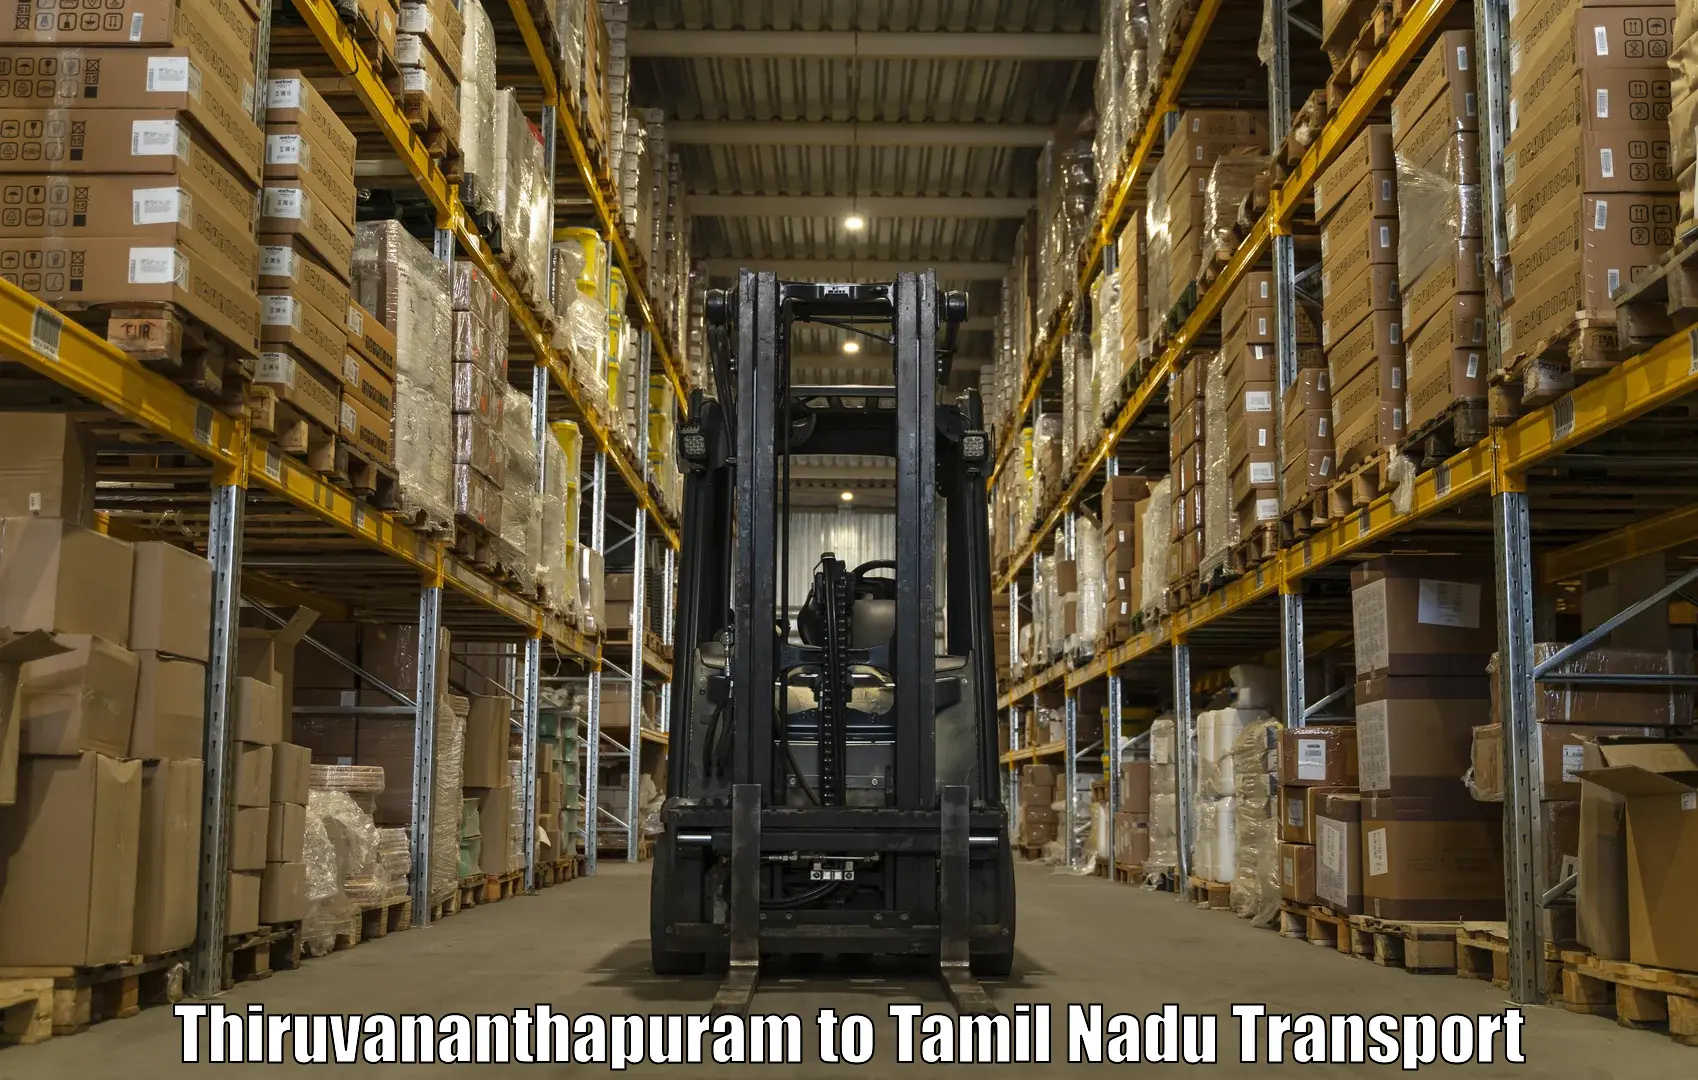 Pick up transport service Thiruvananthapuram to Sivakasi